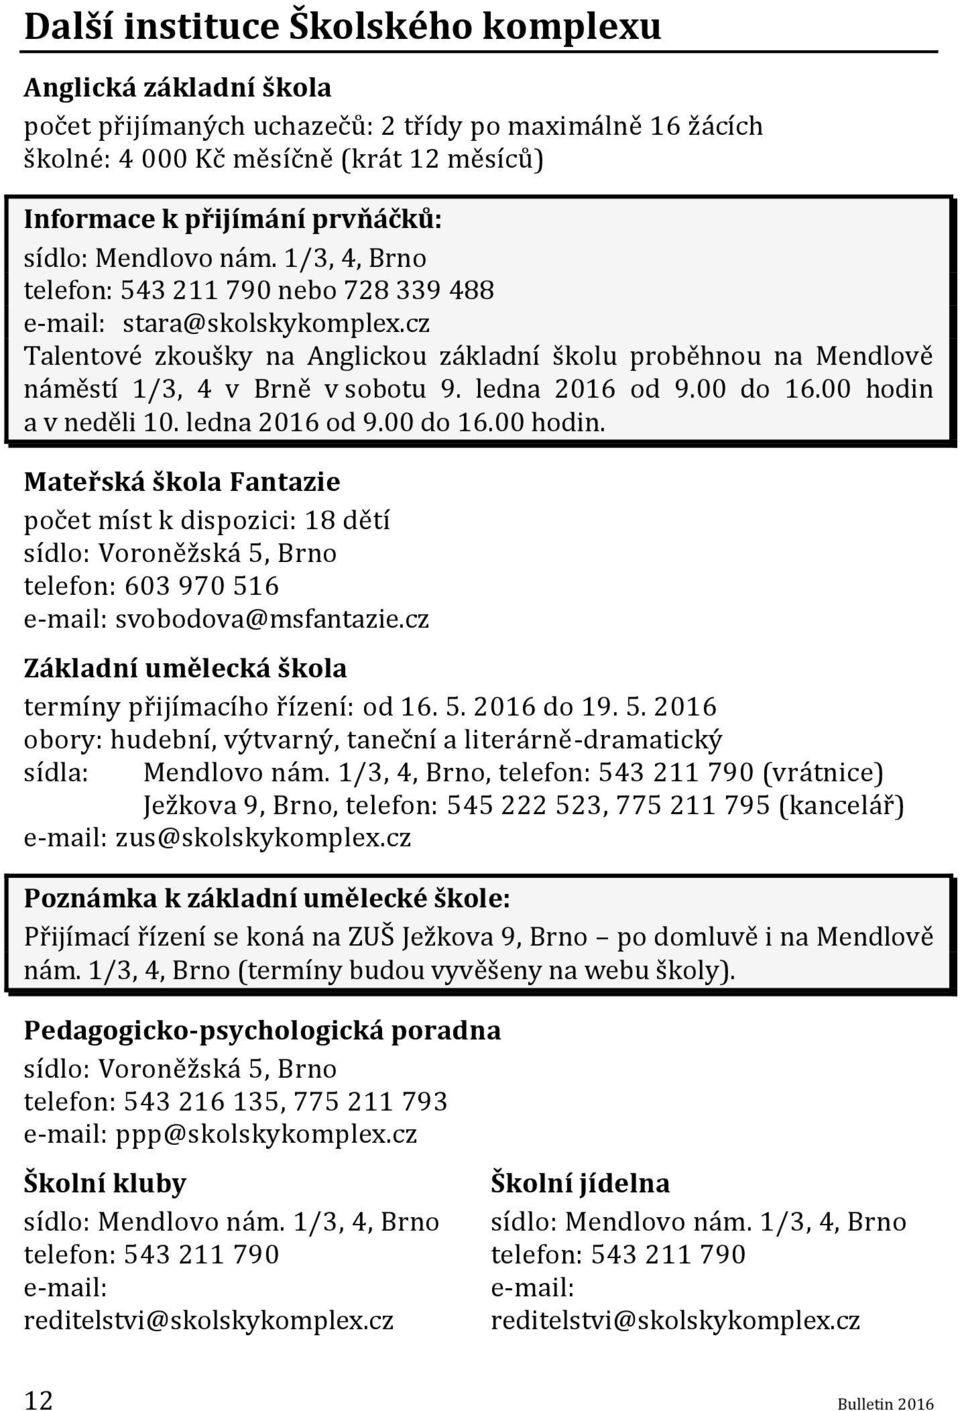 ledna 2016 od 9.00 do 16.00 hodin a v neděli 10. ledna 2016 od 9.00 do 16.00 hodin. Mateřská škola Fantazie počet míst k dispozici: 18 dětí sídlo: Voroněžská 5, Brno telefon: 603 970 516 e-mail: svobodova@msfantazie.